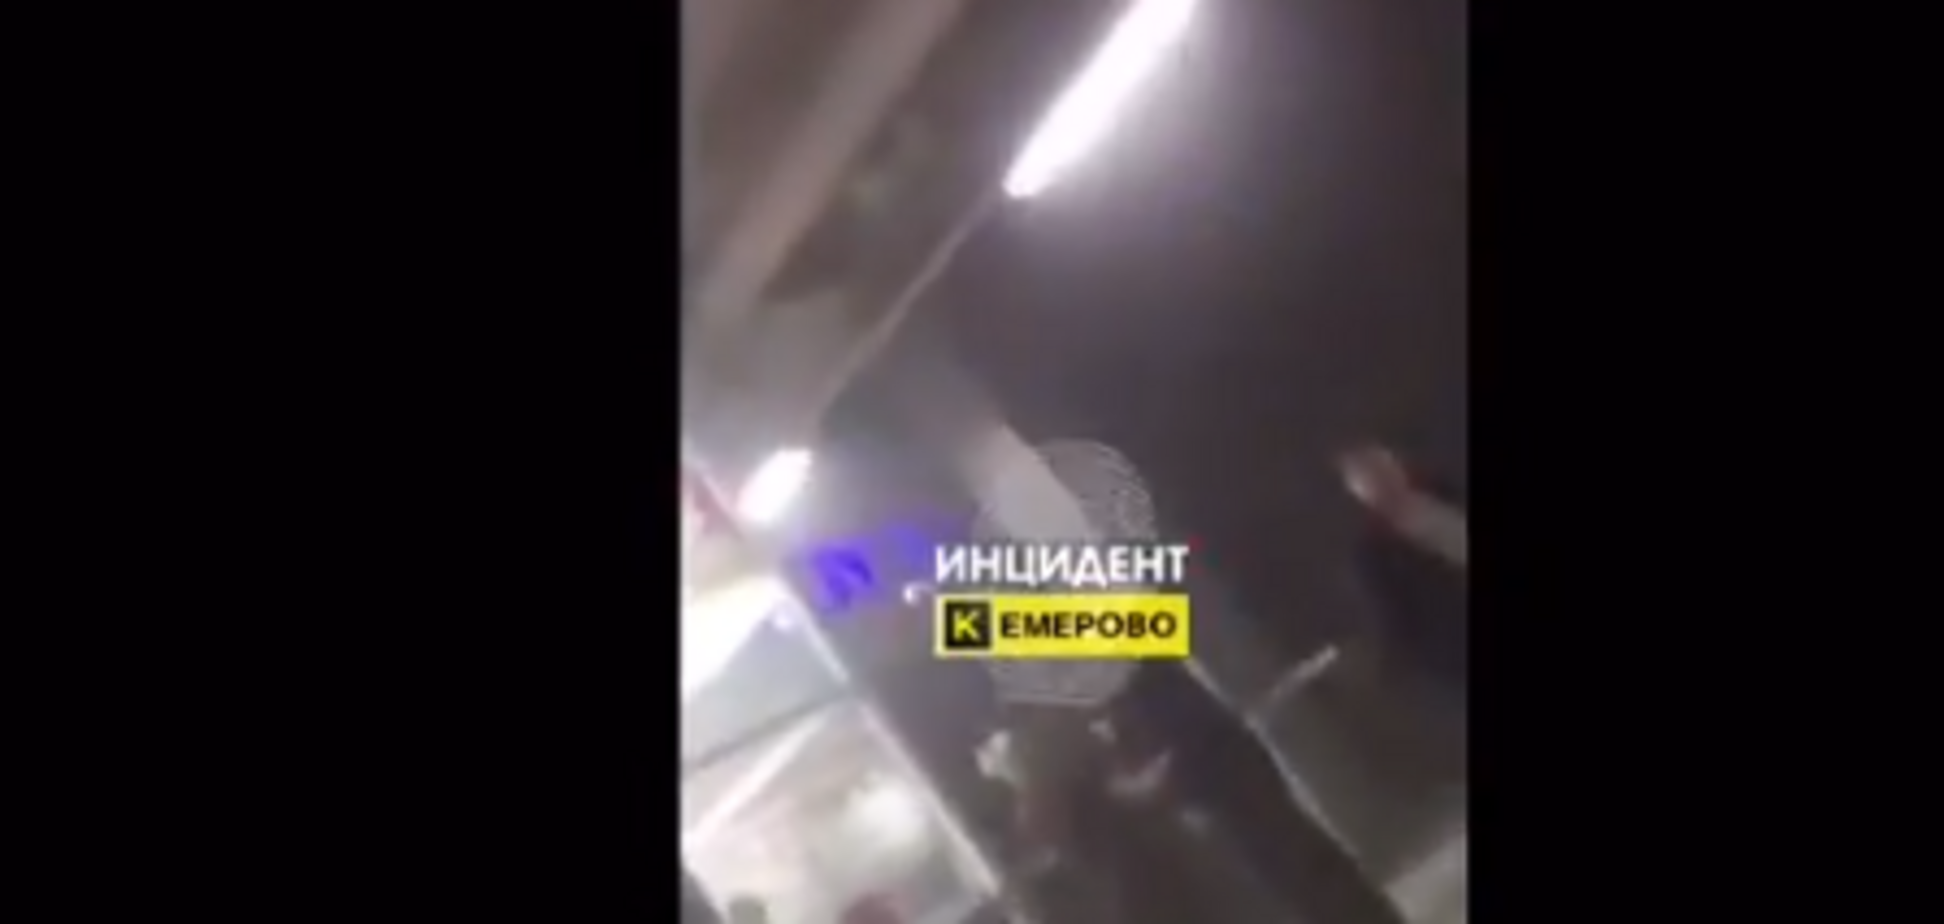  Появилось видео паники в пылающем ТЦ в России